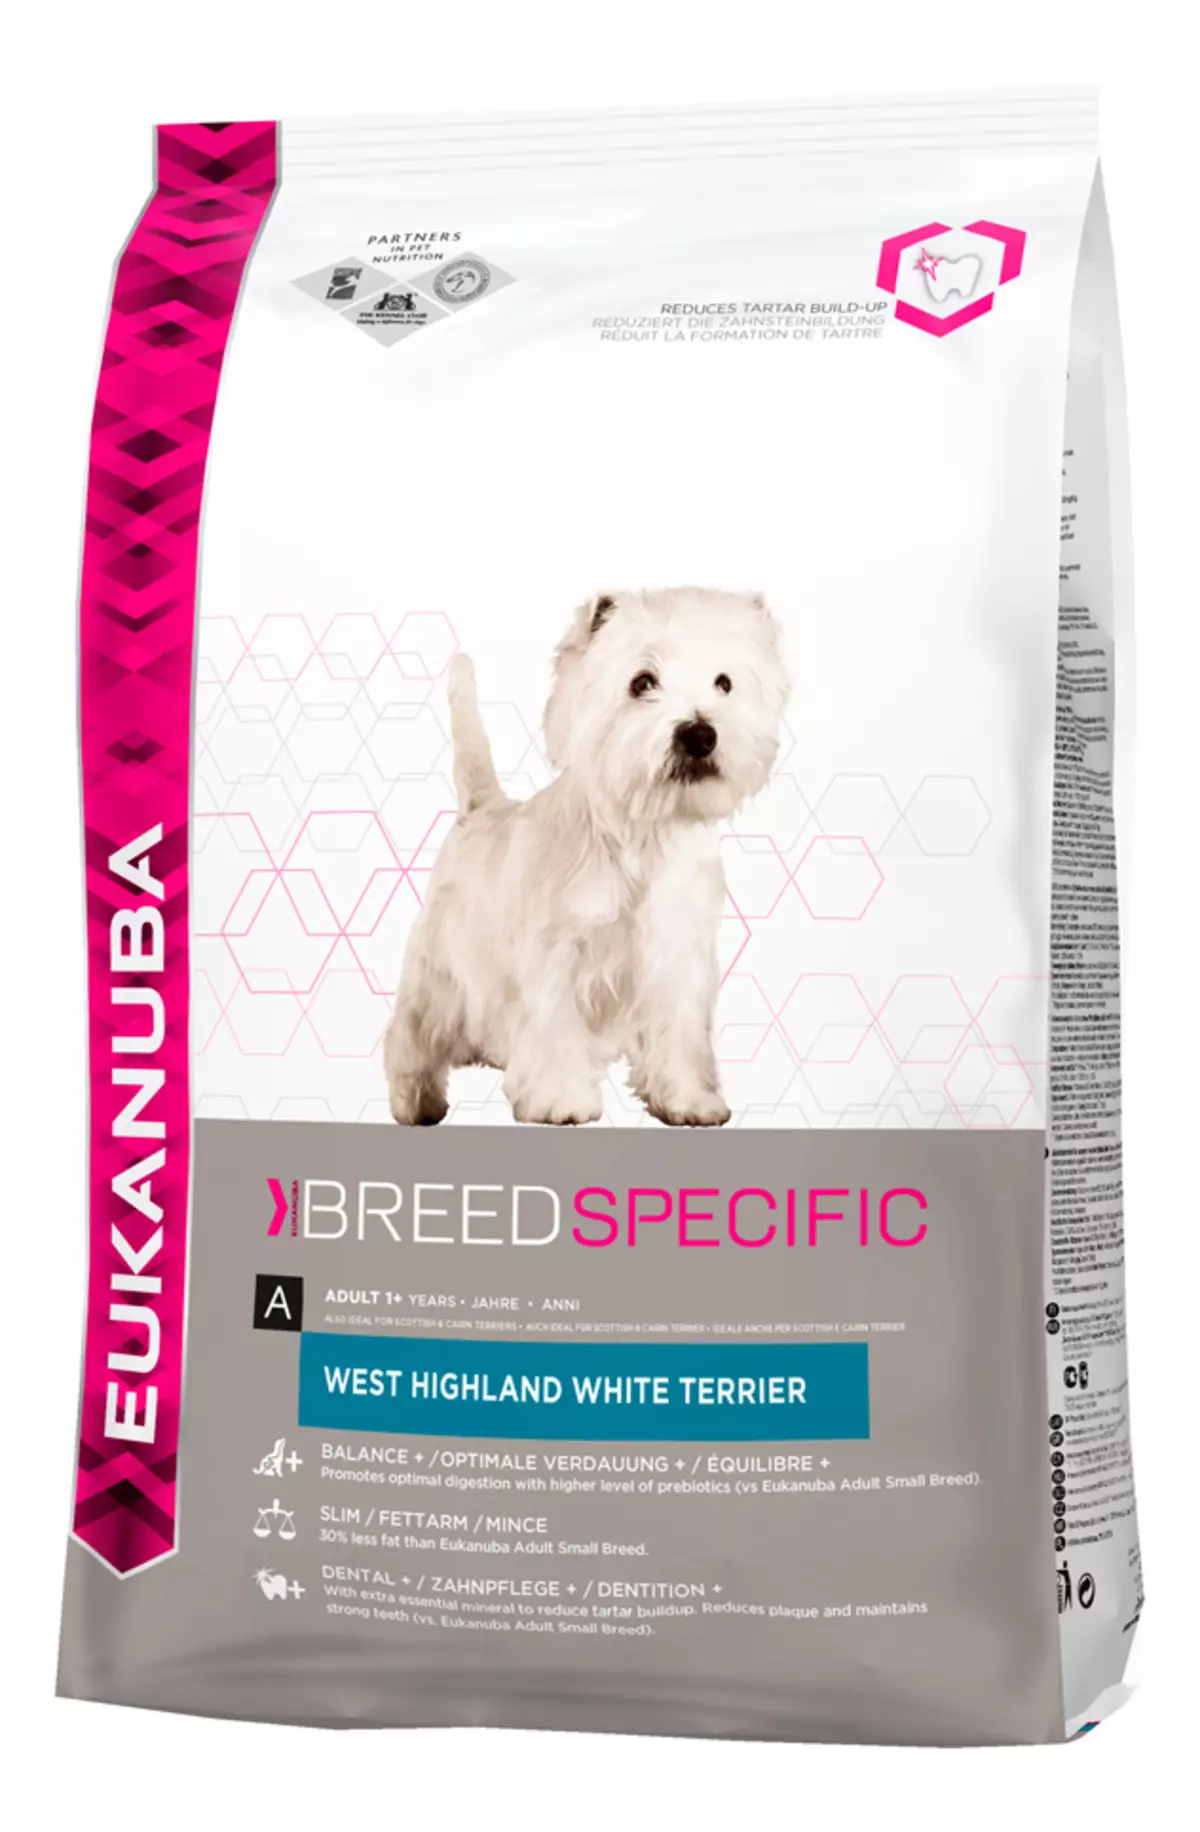 West Highland White Terrier (66 φωτογραφίες): Περιγραφή των λευκών σκύλων, των πλεονεκτημάτων και των μηνυμάτων της φυλής. Πώς να επιλέξετε κουτάβια; Διατροφή και χαρακτήρα. Κριτικές ιδιοκτησίας 23058_59